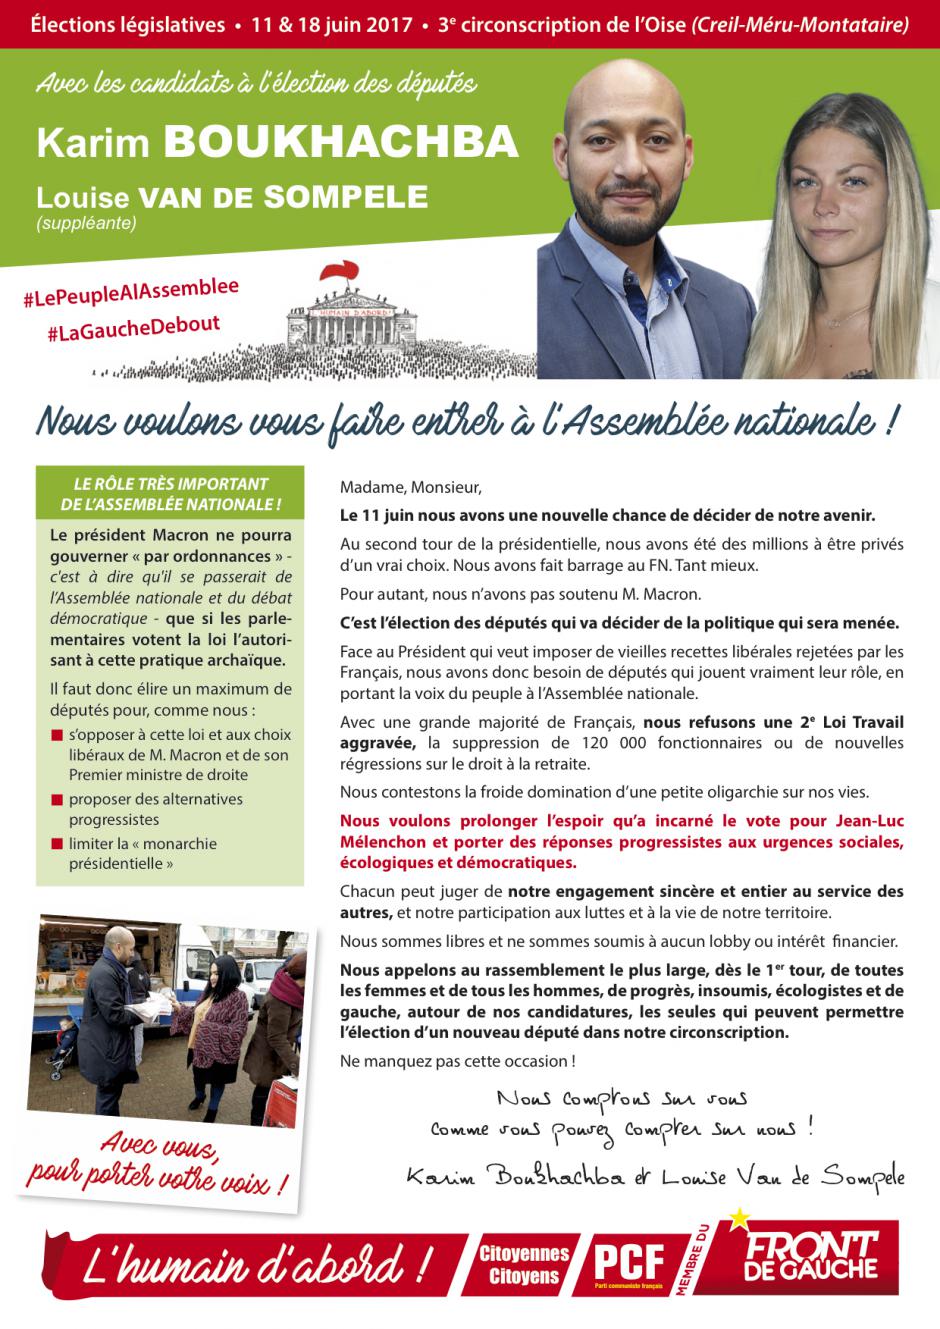 Profession de foi de Karim Boukhachba et Louise Van de Sompele - 3e circonscription de l'Oise, 11 juin 2017